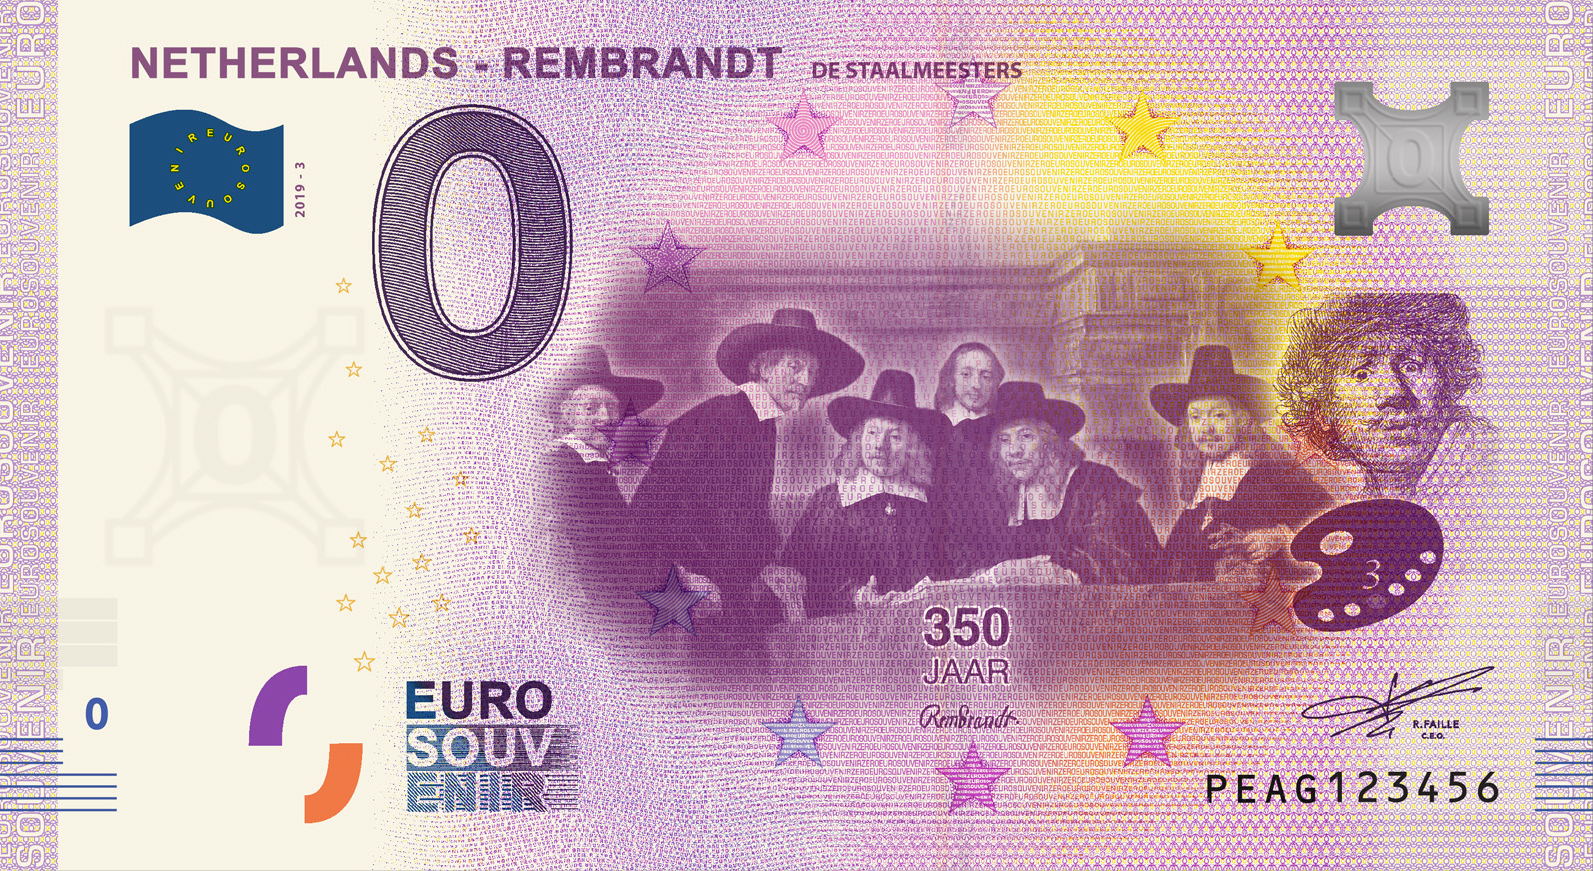 0 Euro biljet Nederland 2019 - Rembrandt De Staalmeesters LIMITED EDITION FIP#9